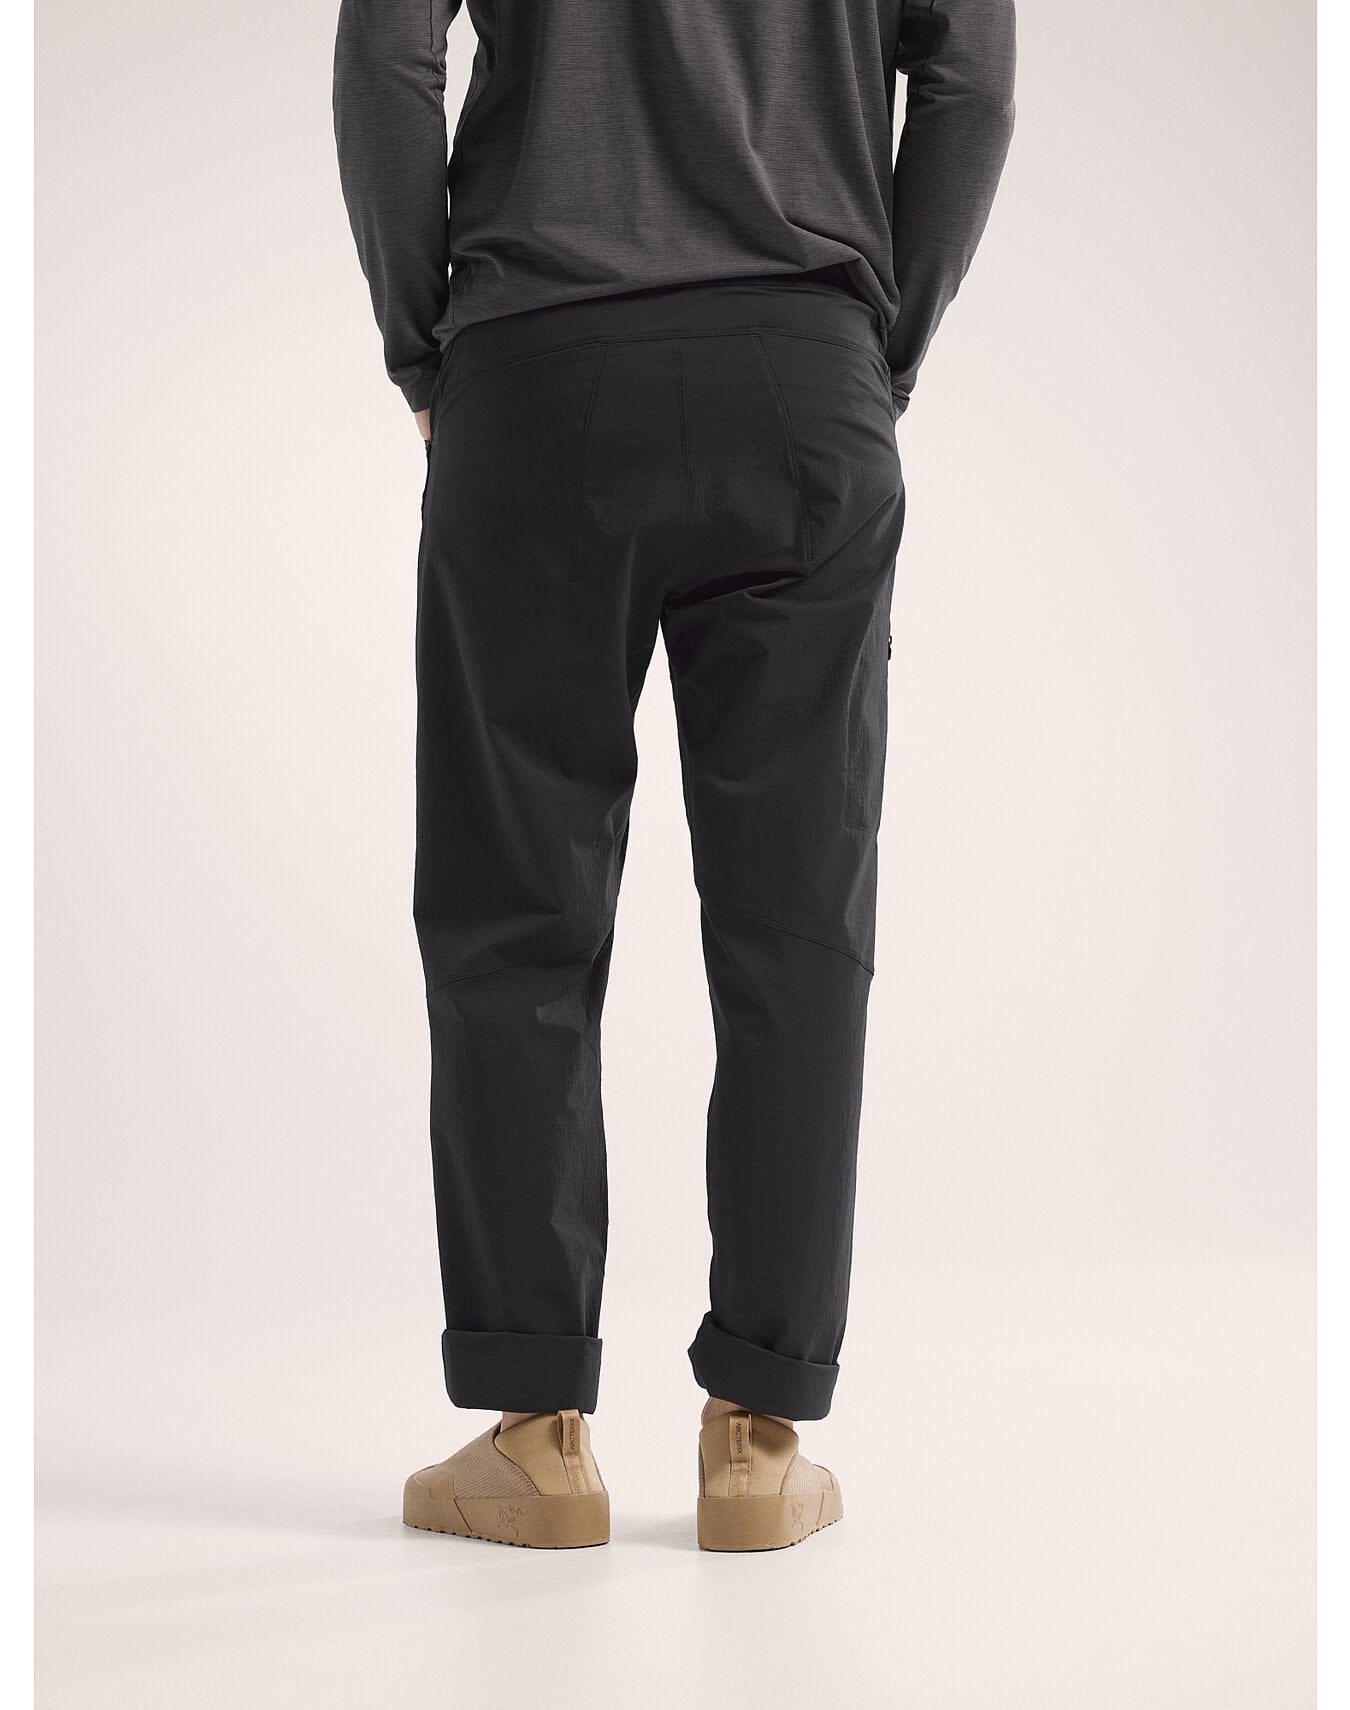 Pantalon Konseal Homme - BLACK